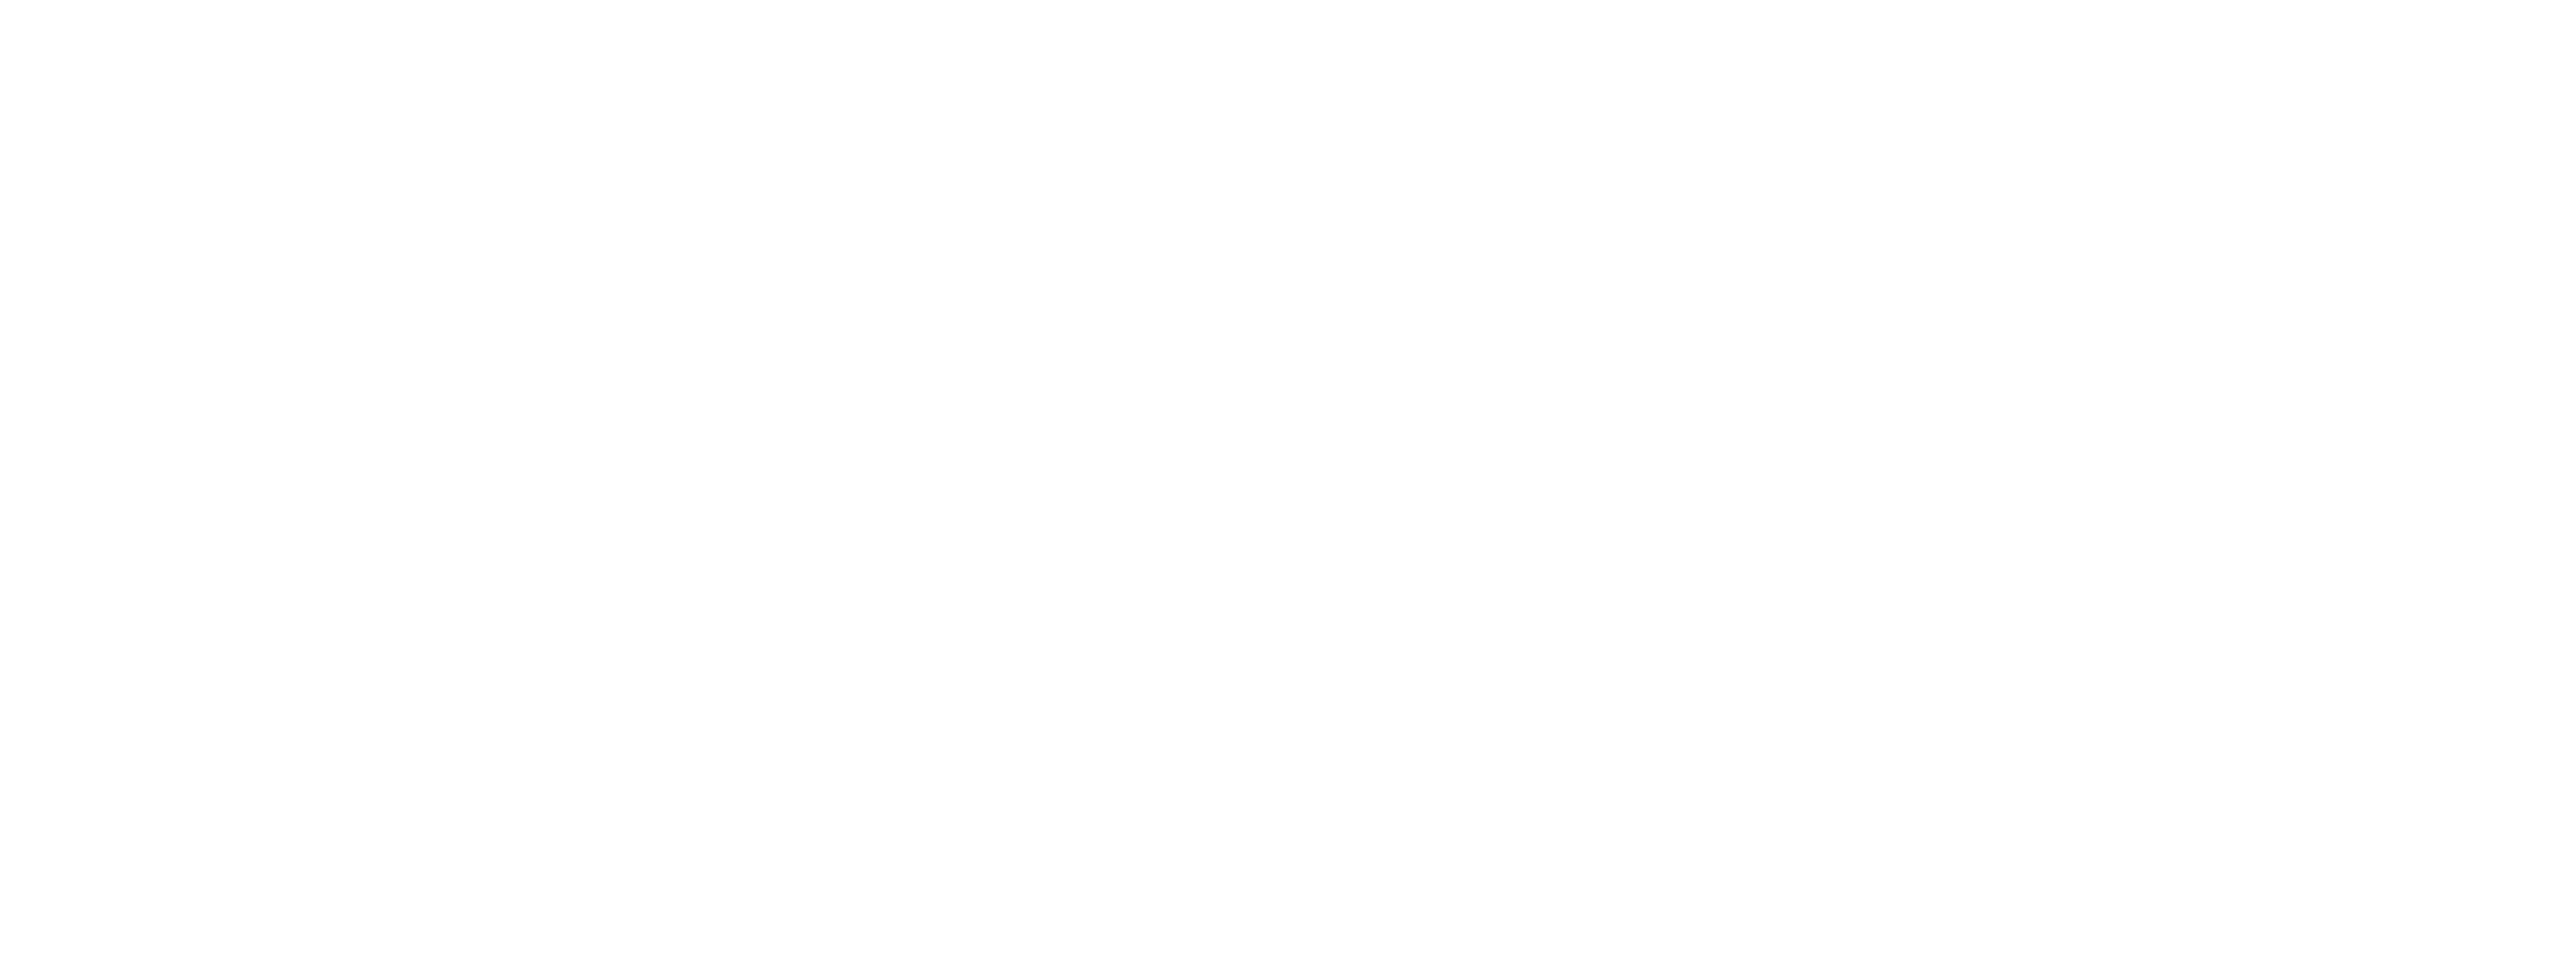 Éricky Hendricky